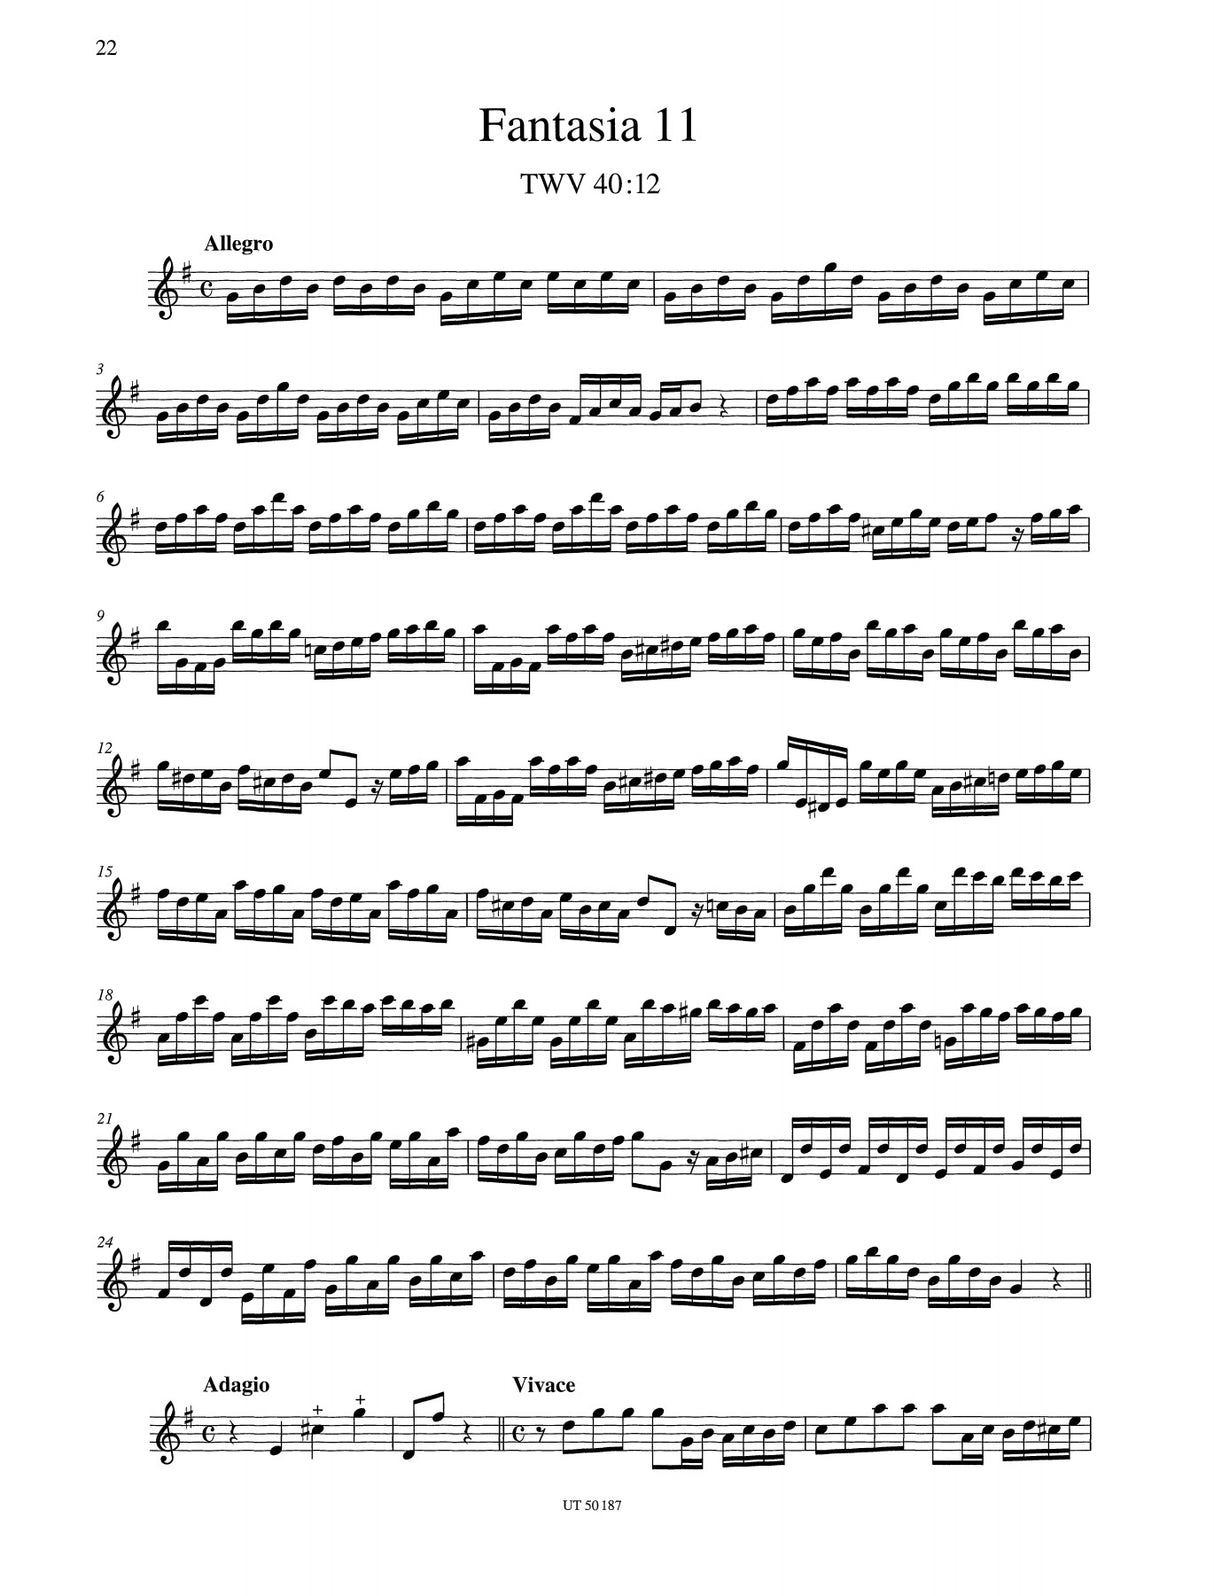 Telemann: 12 Fantasias for Flute, TWV 40:2-13